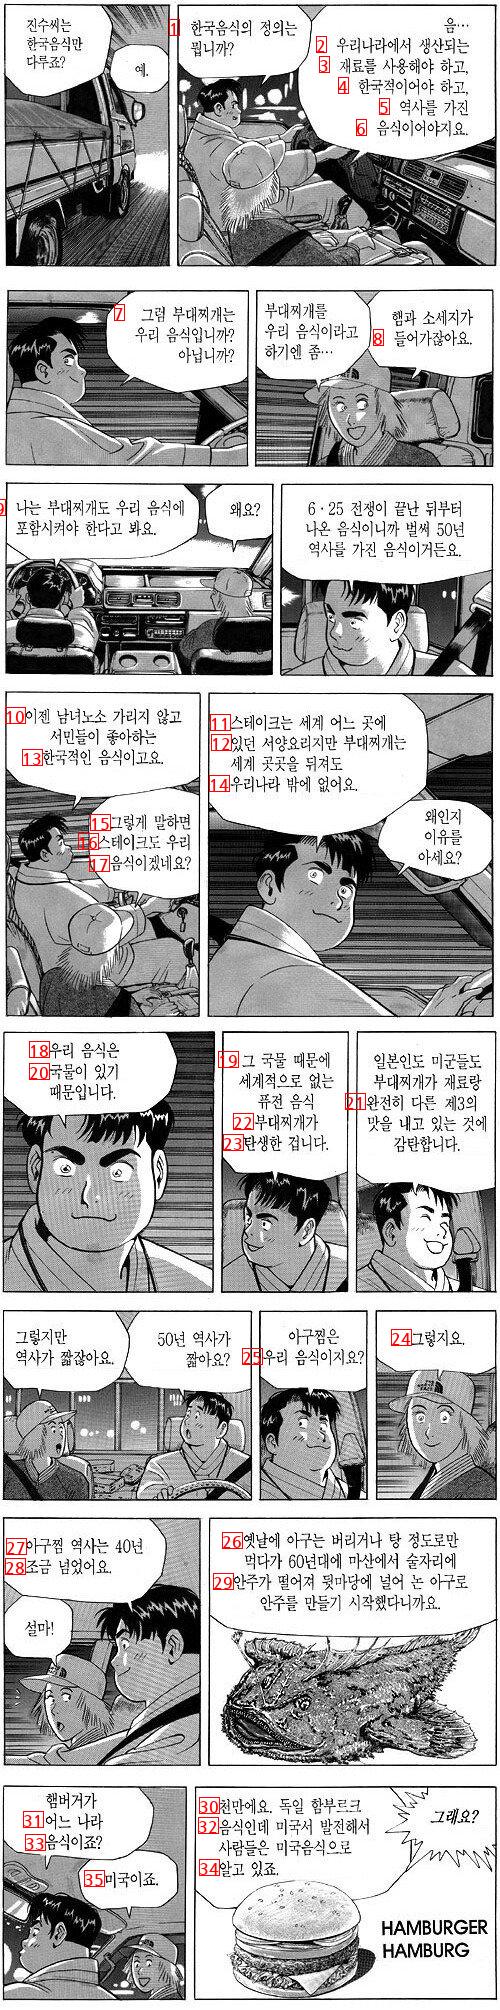 만화 식객에서 인상 깊게 본 한국음식 논쟁.jpg